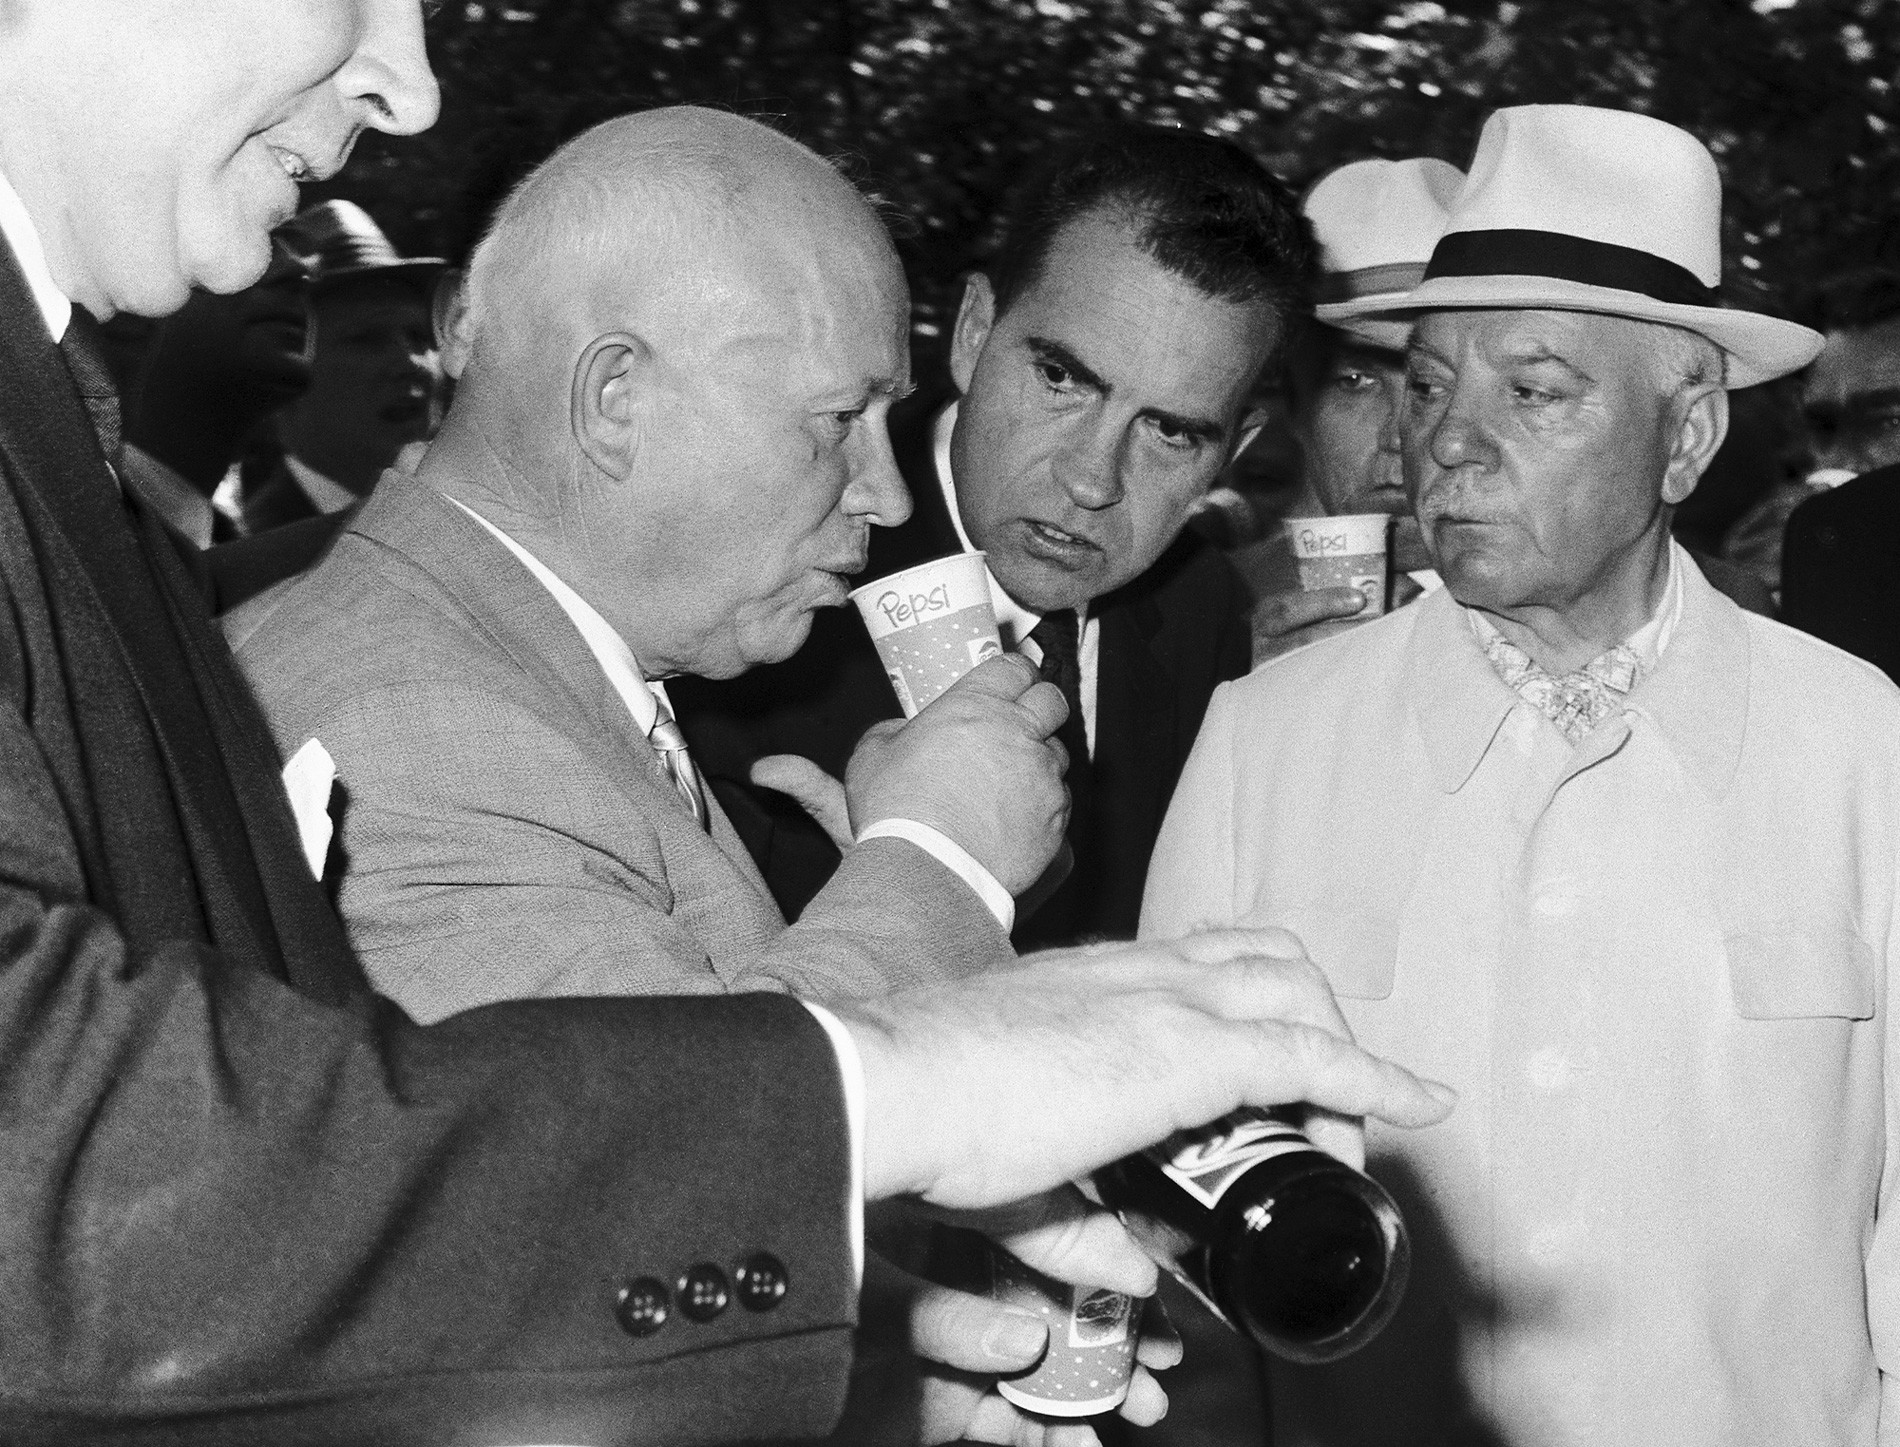 Москва, Совјетски Савез. Совјетски премијер Никита Хрушчов испија Пепси колу под будним оком подпредседника САД Ричарда Никсона (у центру) и председника СССР Климента Ворошилова (десно) у парку „Сокољники“ 24. јула 1959.